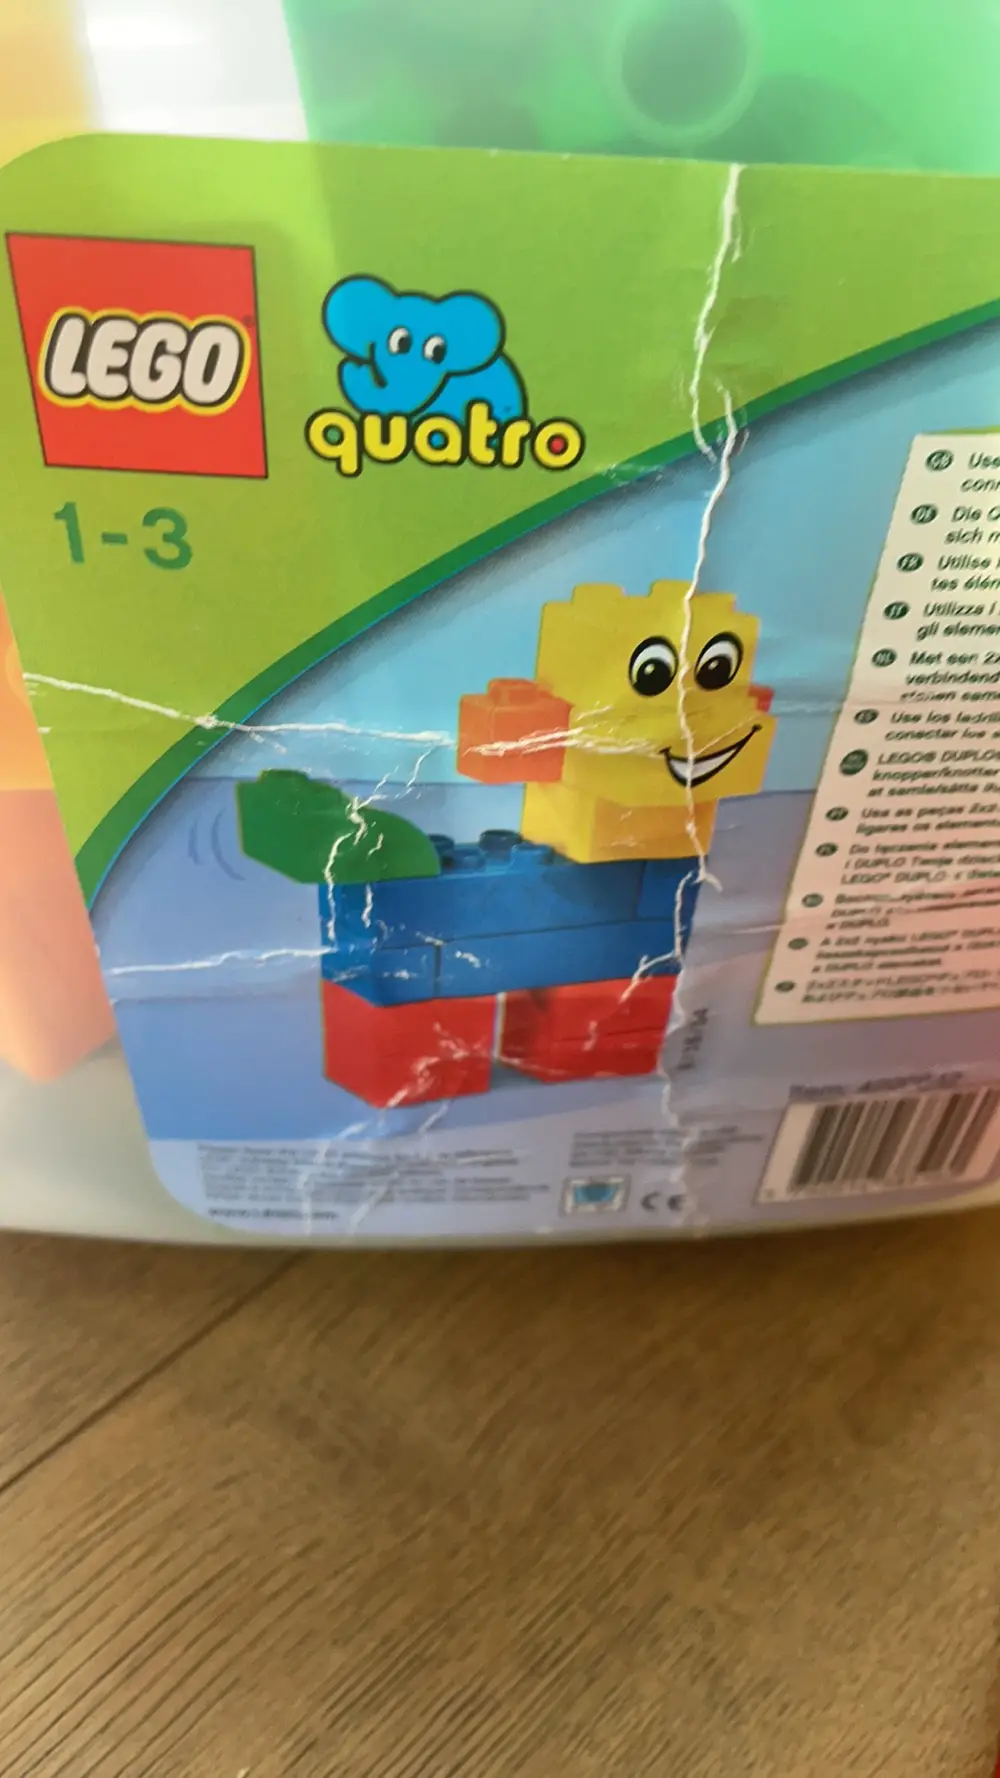 Køb LEGO Quatro Heidi på Reshopper · Shop secondhand til børn, mor og bolig